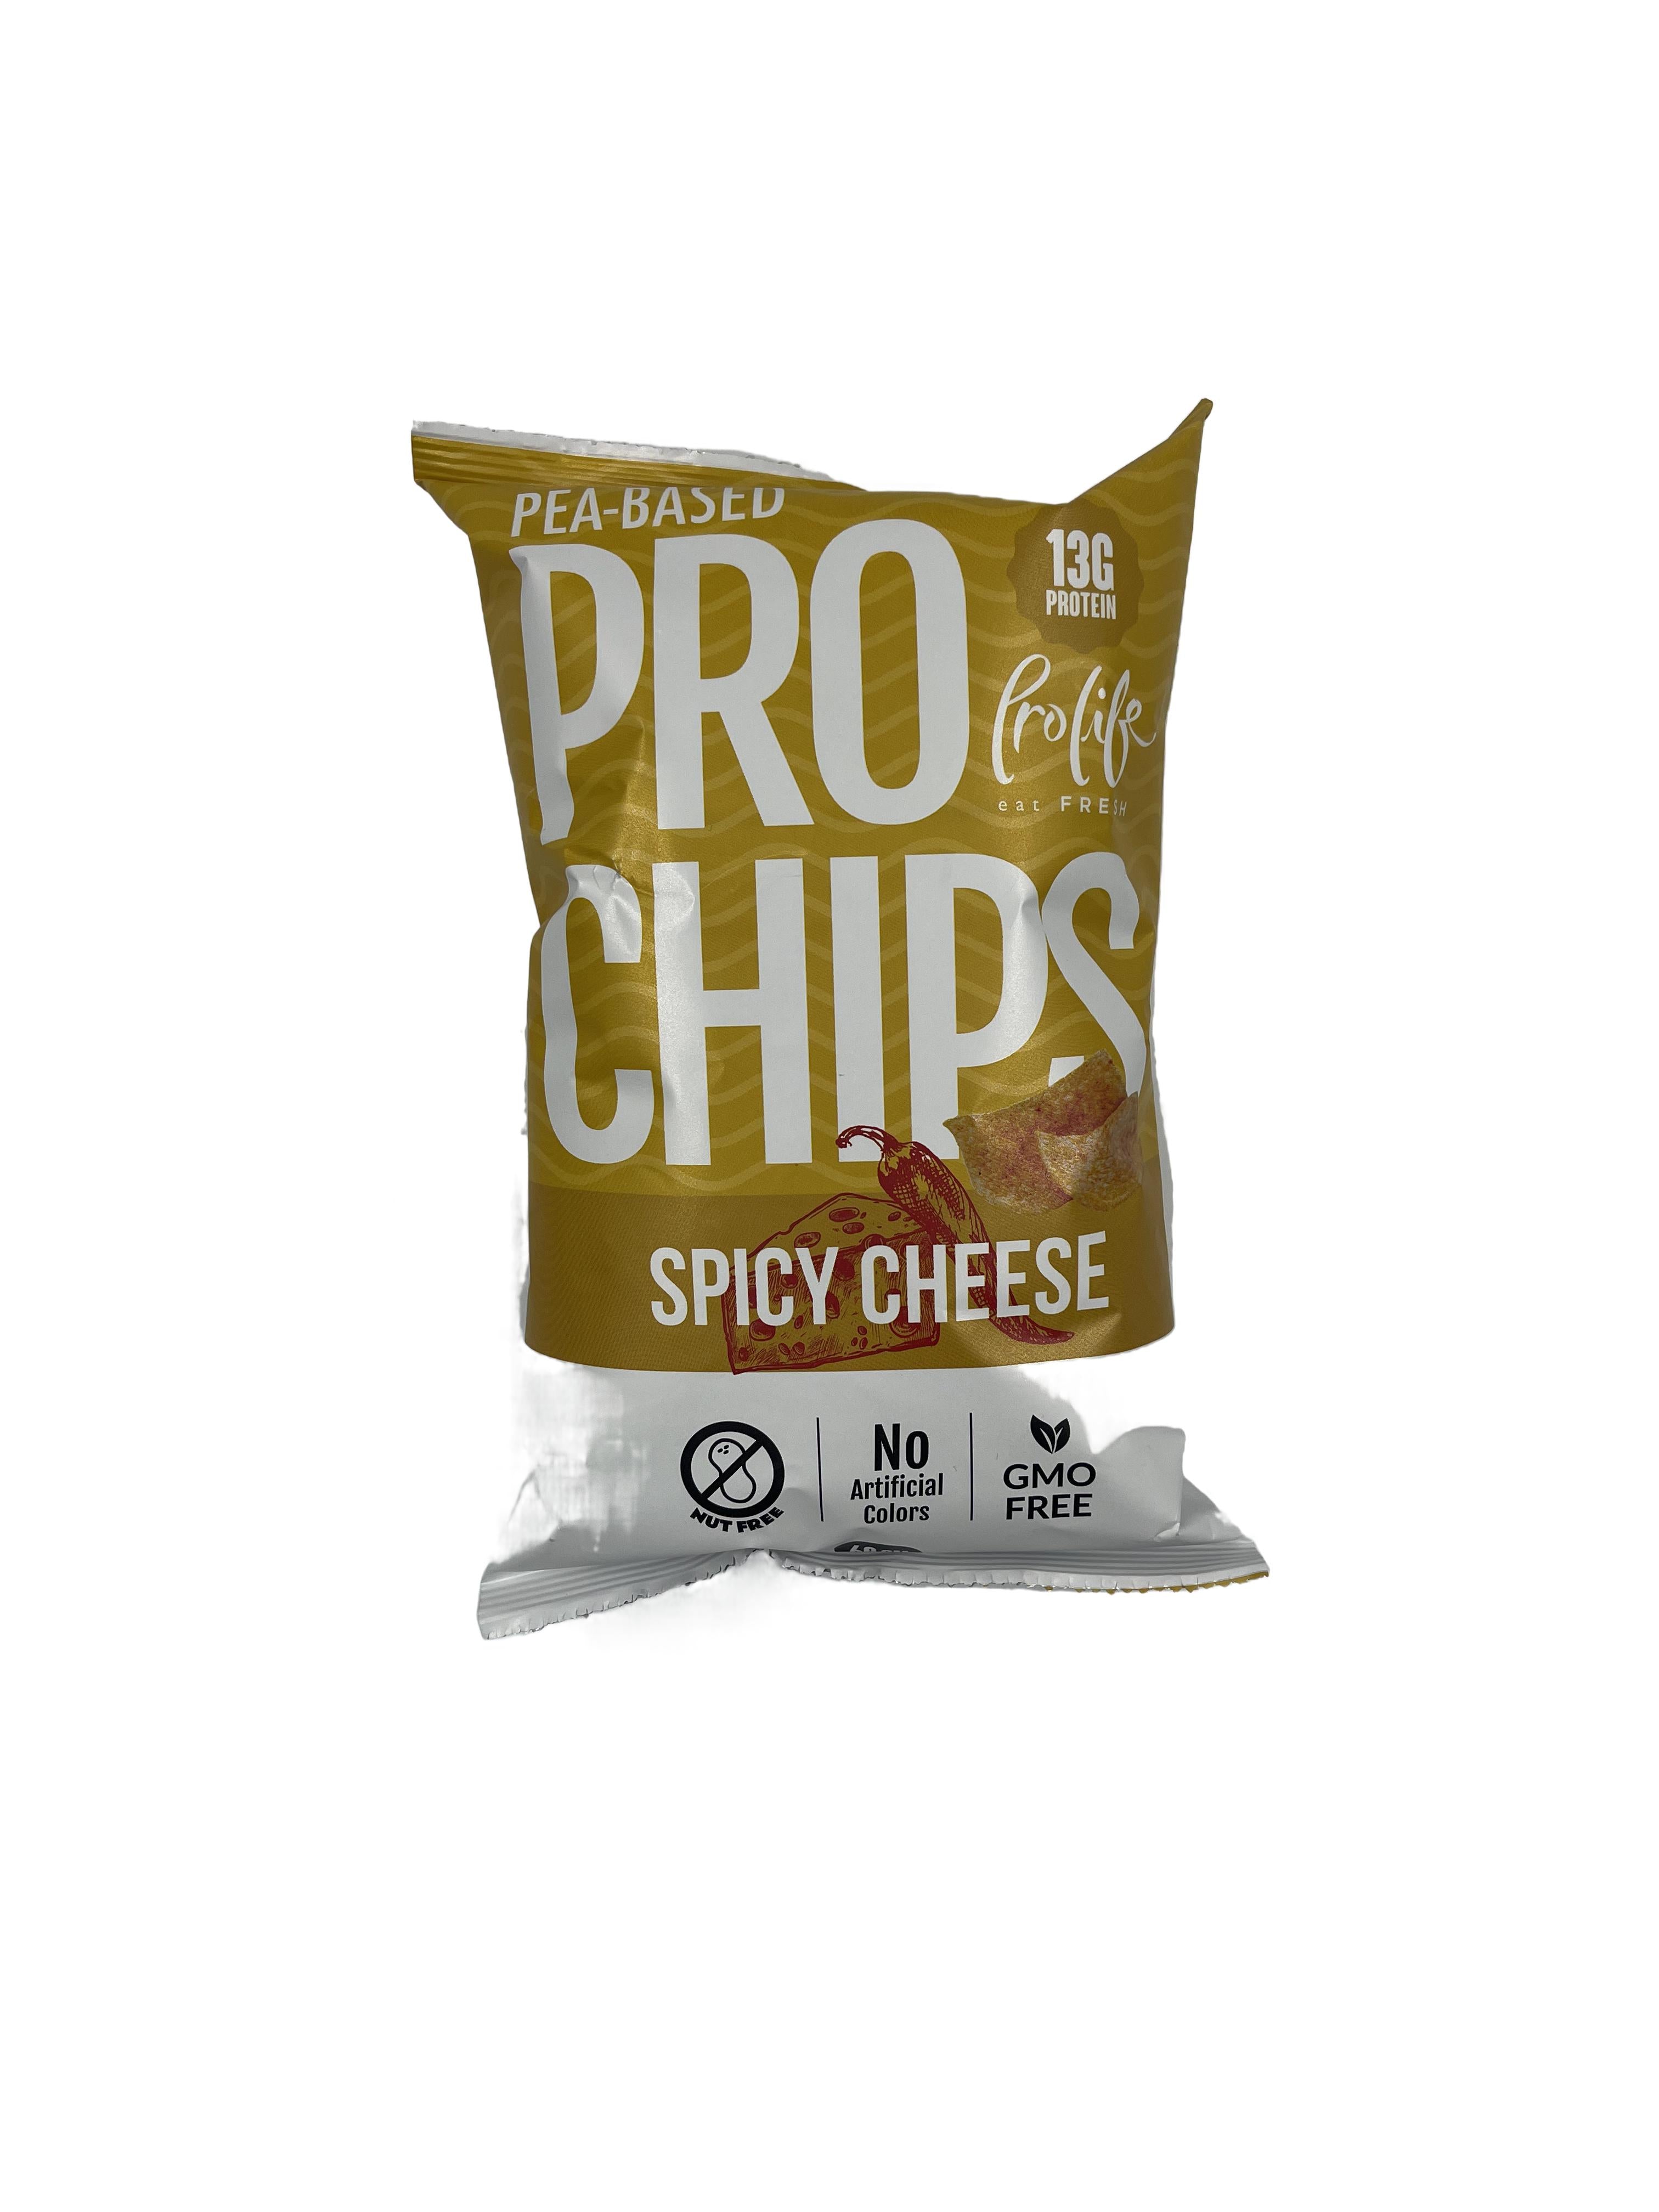 Prolife - Pro Chips - برولايف - برو شيبس